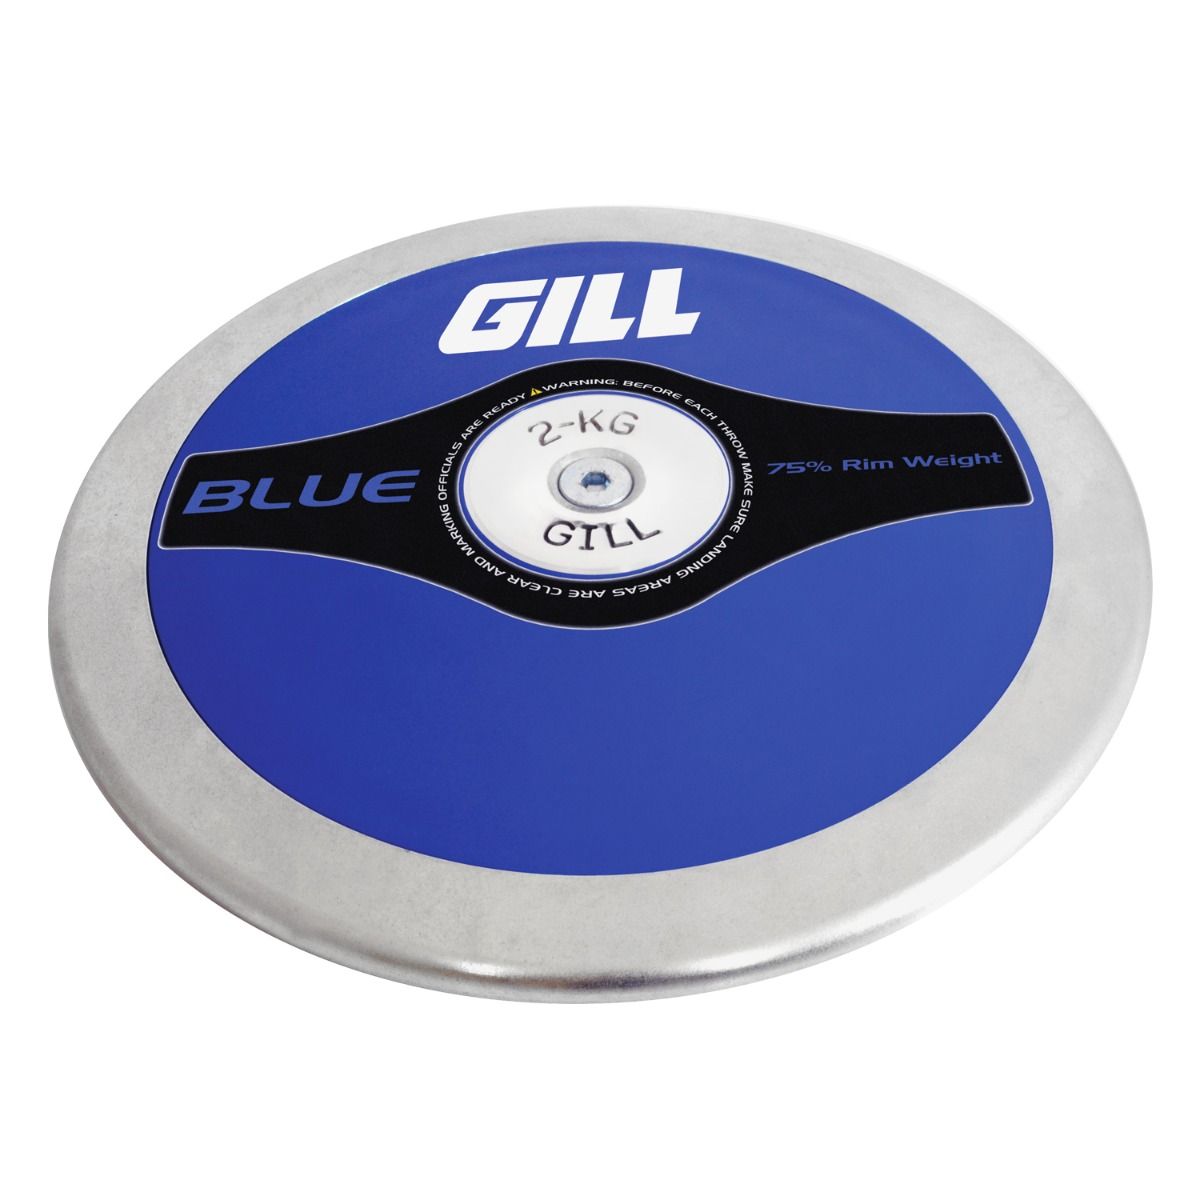 Gill Athletics Blue Discus